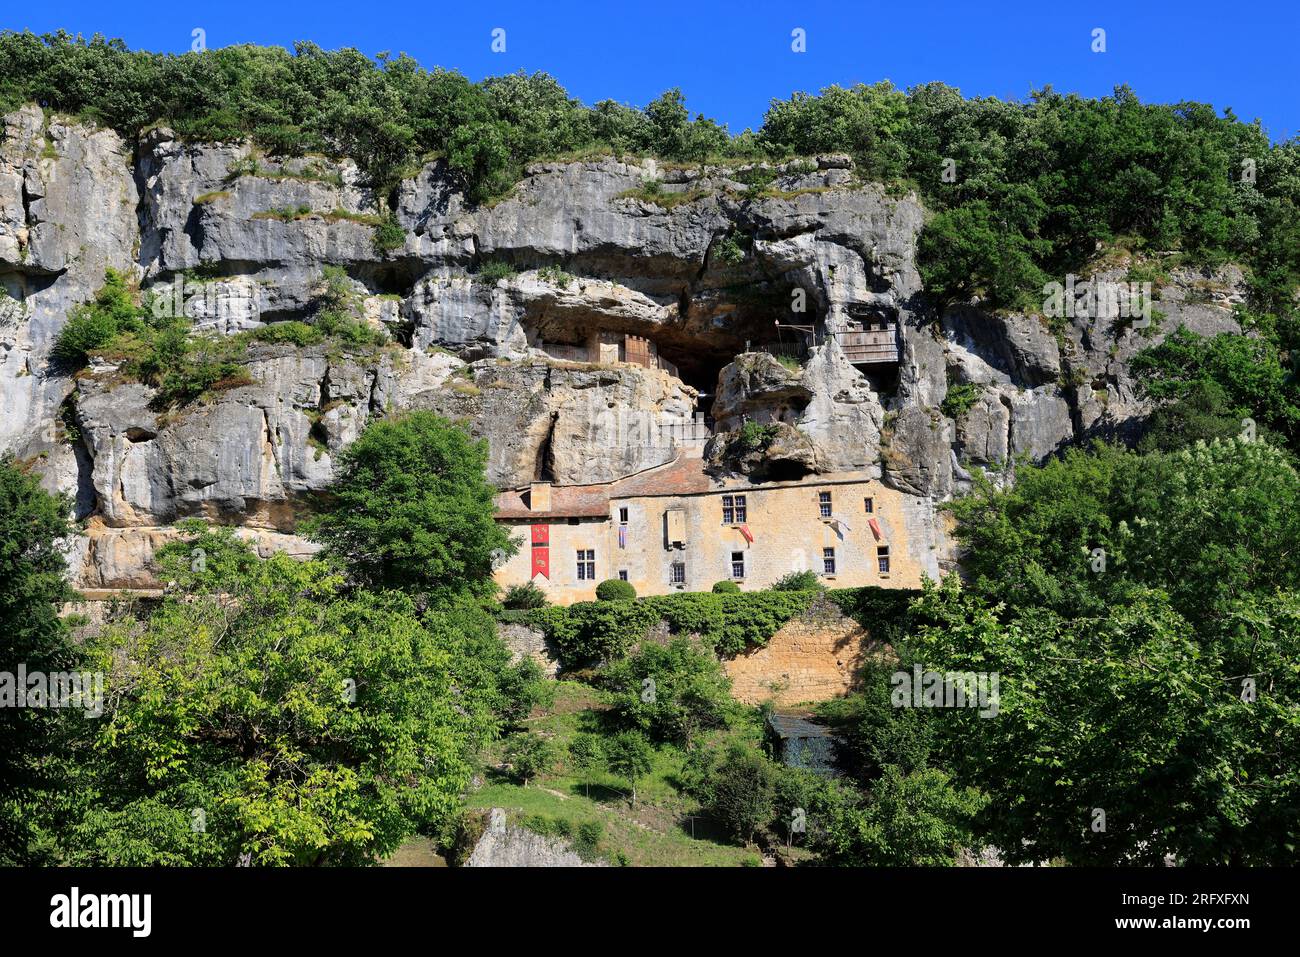 La maison forte de Reignac dernier exemple intact de château-falaise en France, Tursac, Périgord, Dordogne, Europe Stock Photo